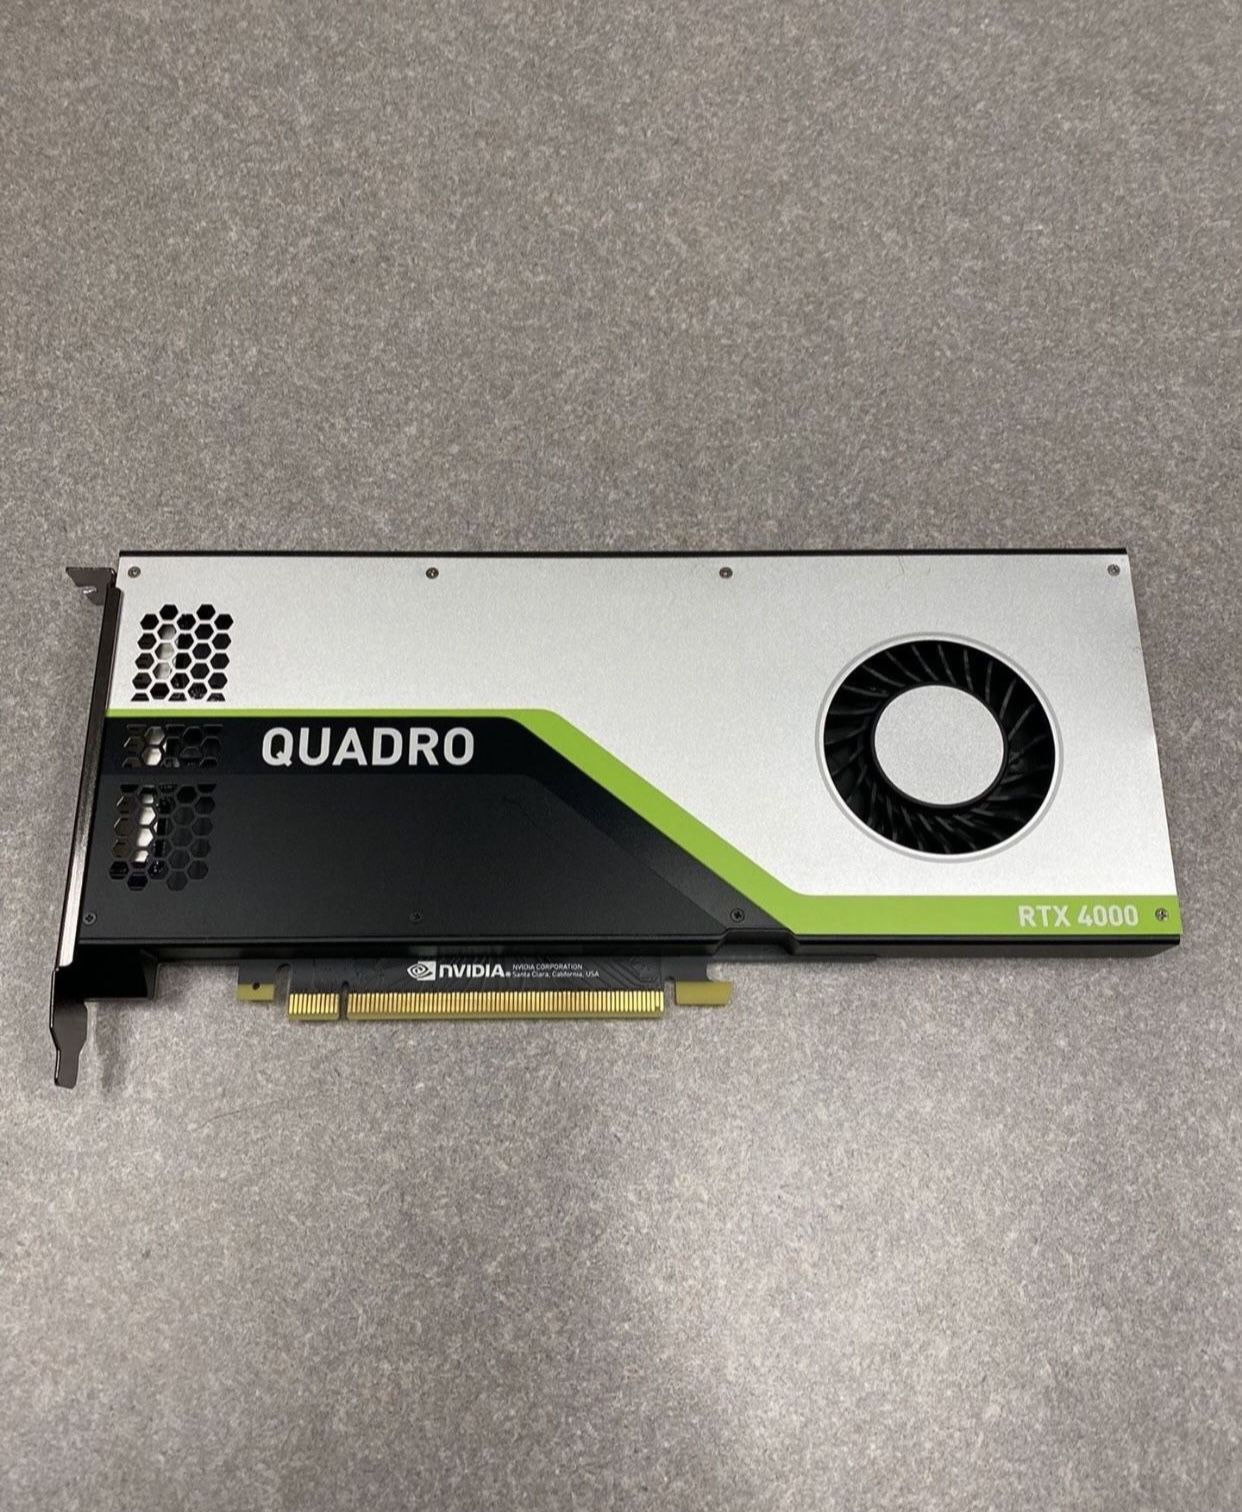 NVIDIA QUADRO RTX4000 Video Card (GPU)